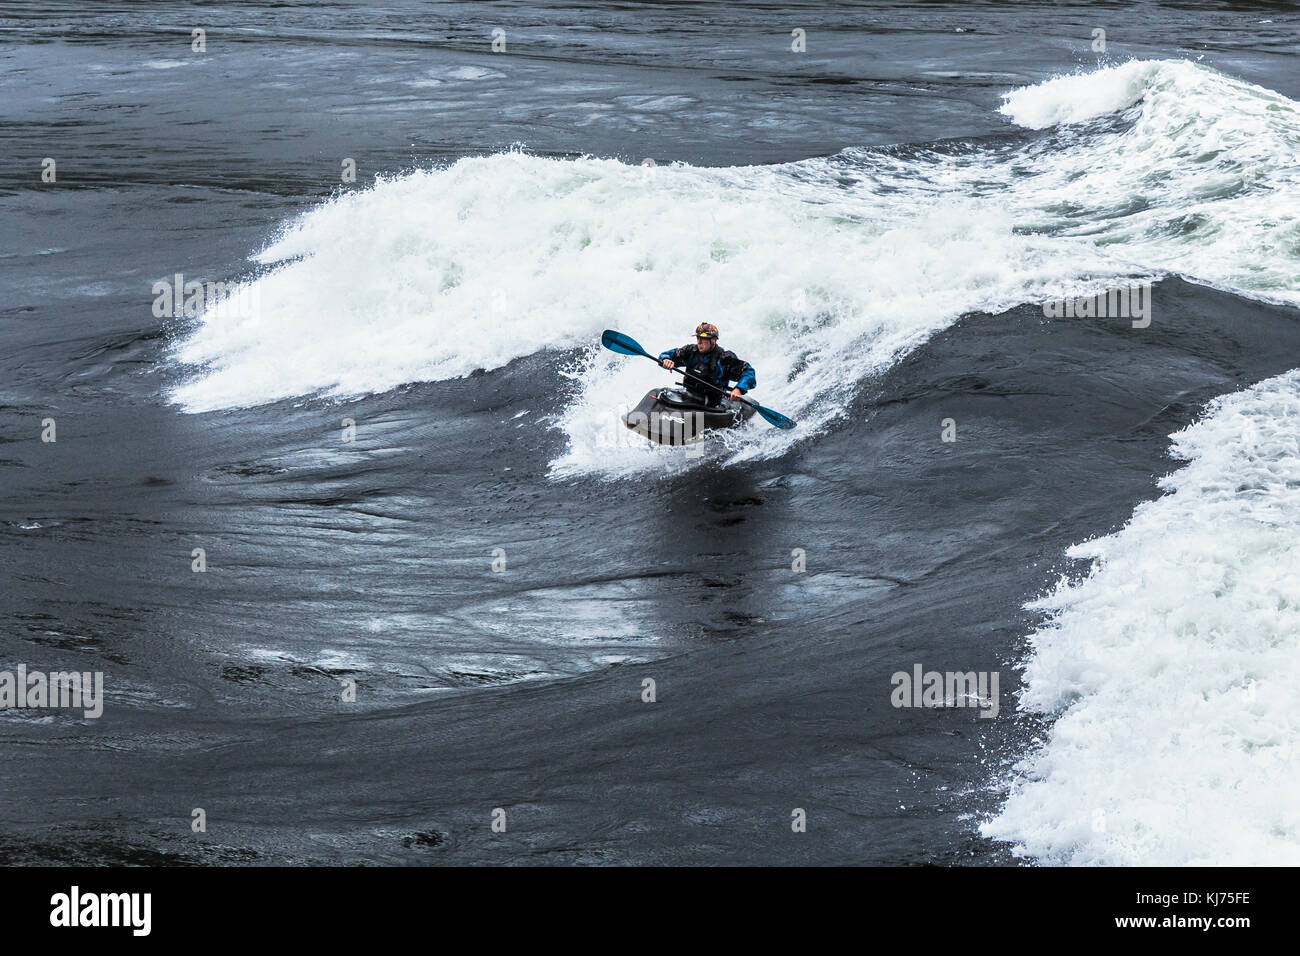 Un uomo helmeted kayak di una faccia di un enorme ondata di Sechelt Rapids, una delle più veloci del mondo passa di marea (Skookumchuck si restringe, British Columbia). Foto Stock